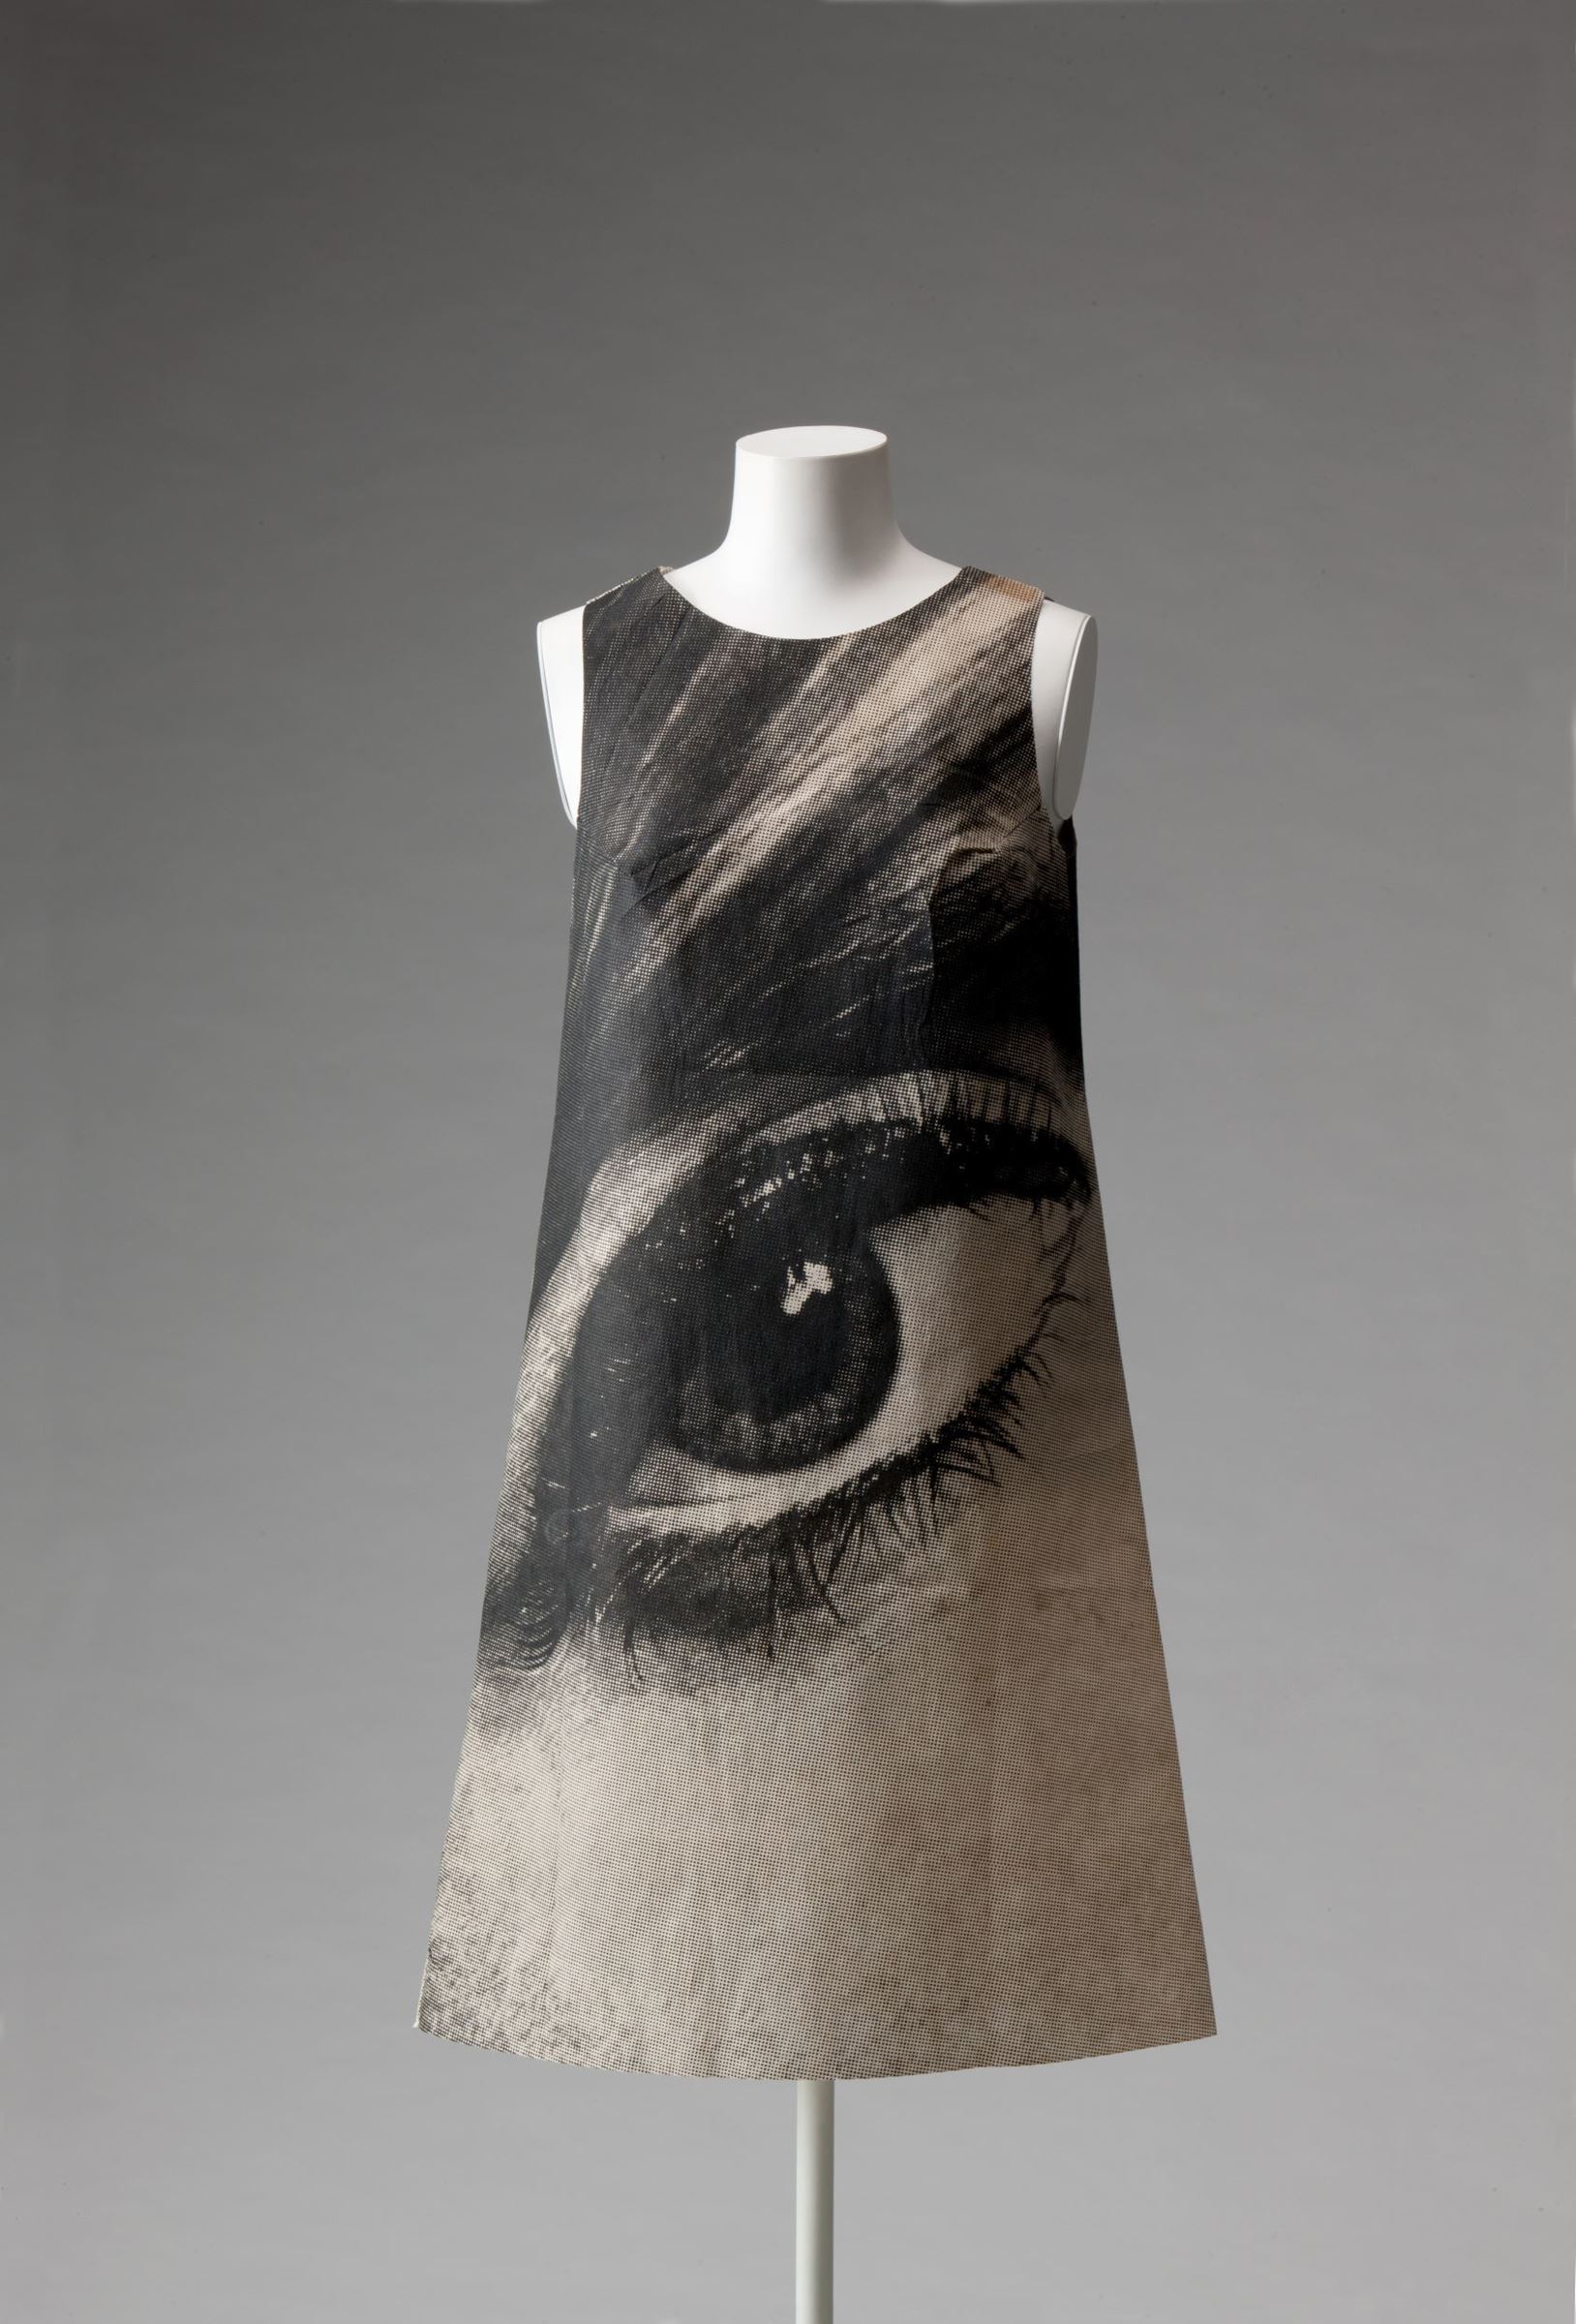 ハリー・ゴードン《ペーパー・ドレス》1958年頃、京都服飾文化研究財団蔵、畠山崇撮影